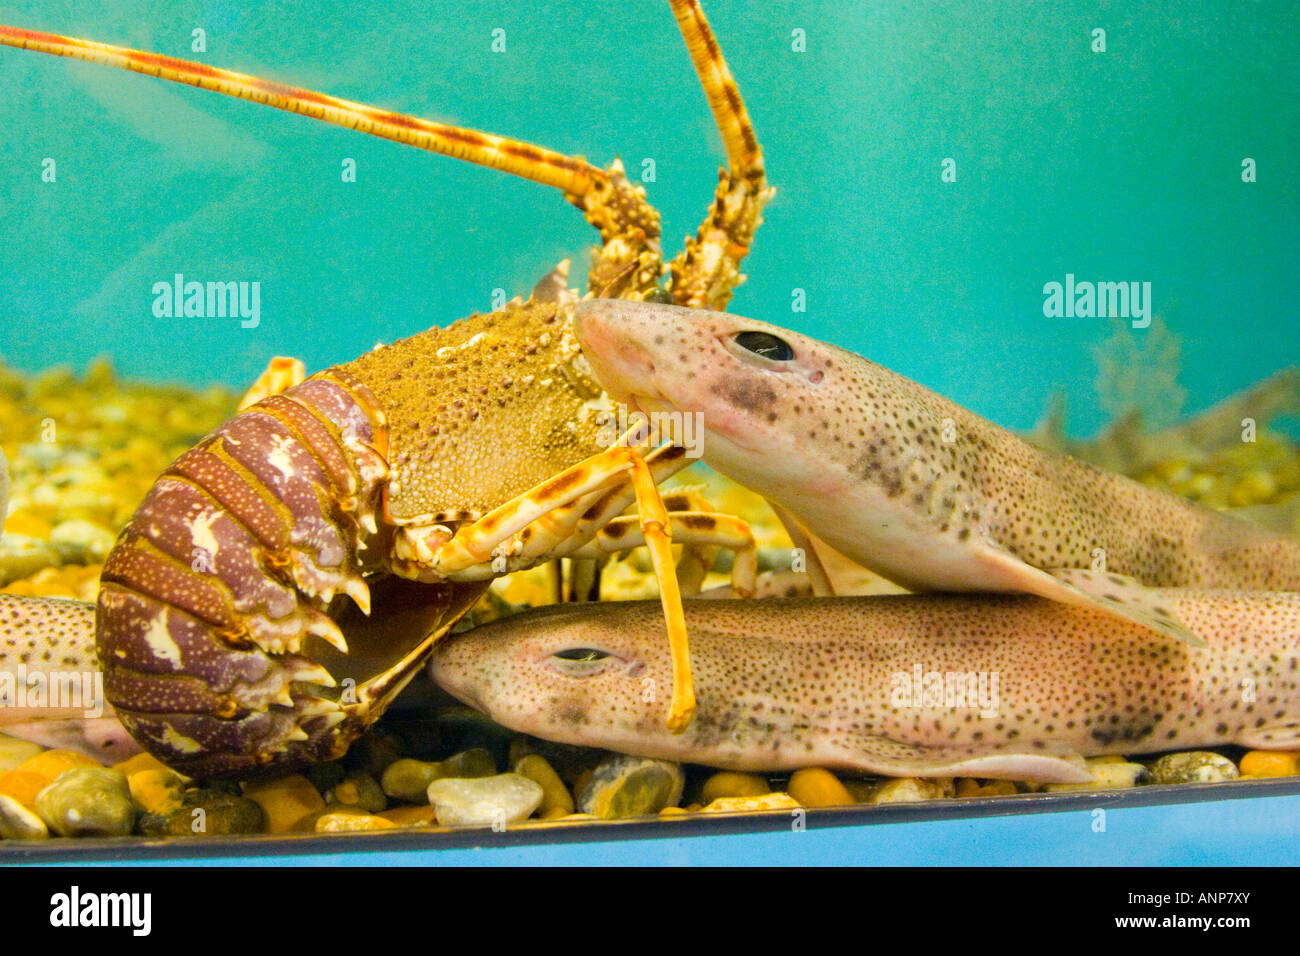 Crawfish in a salt water aquarium Stock Photo